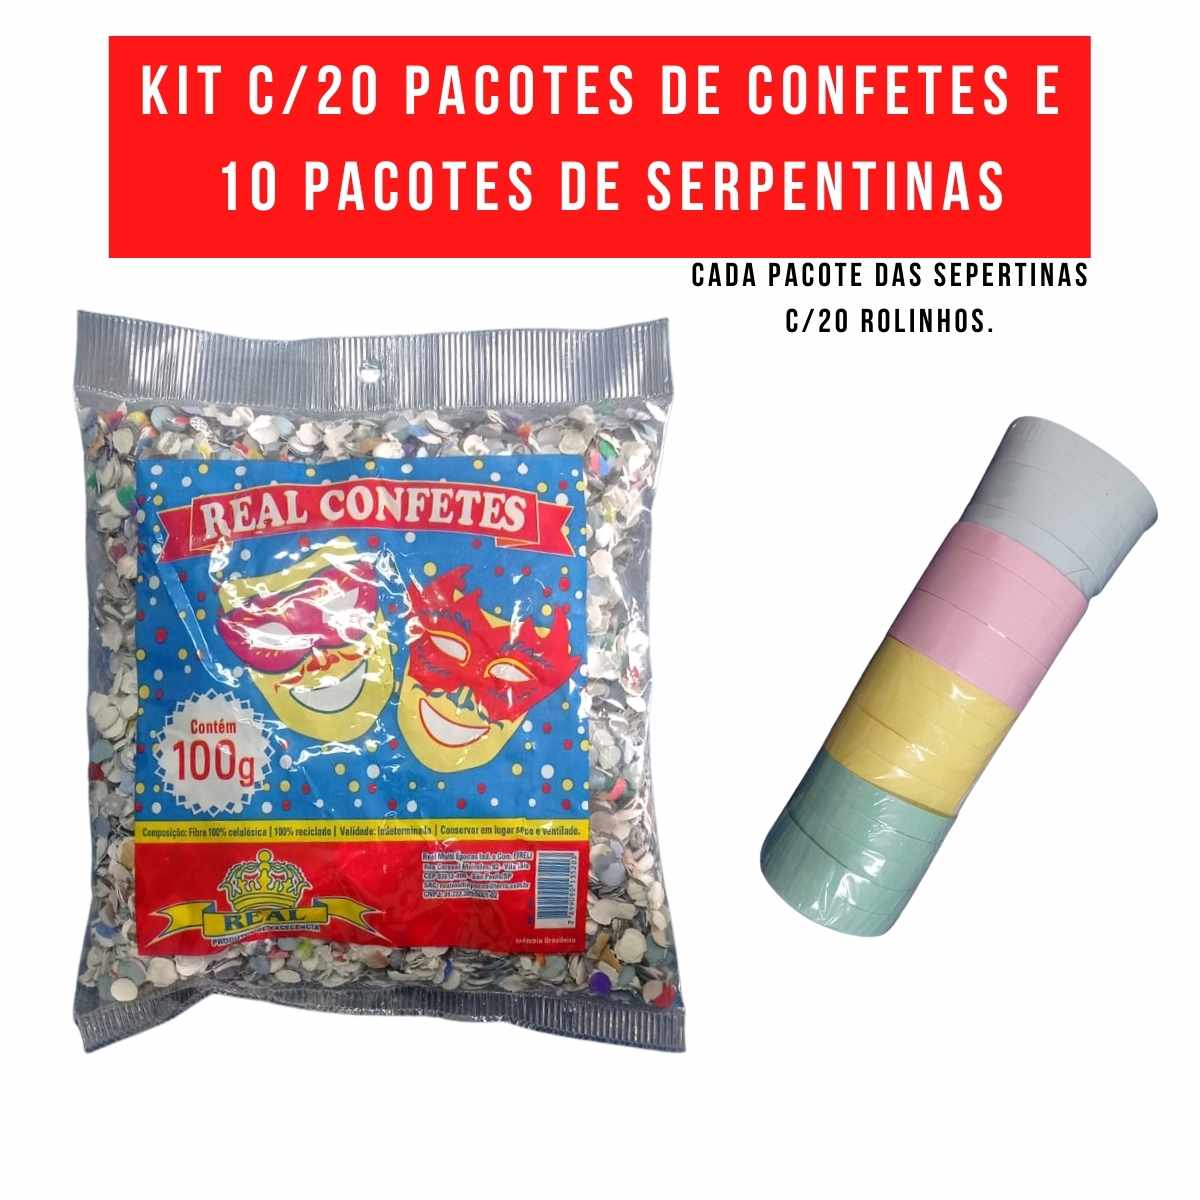 Kit Carnaval com 20 Confetes 100g + 10 Serpentinas (c/20 rolinhos)